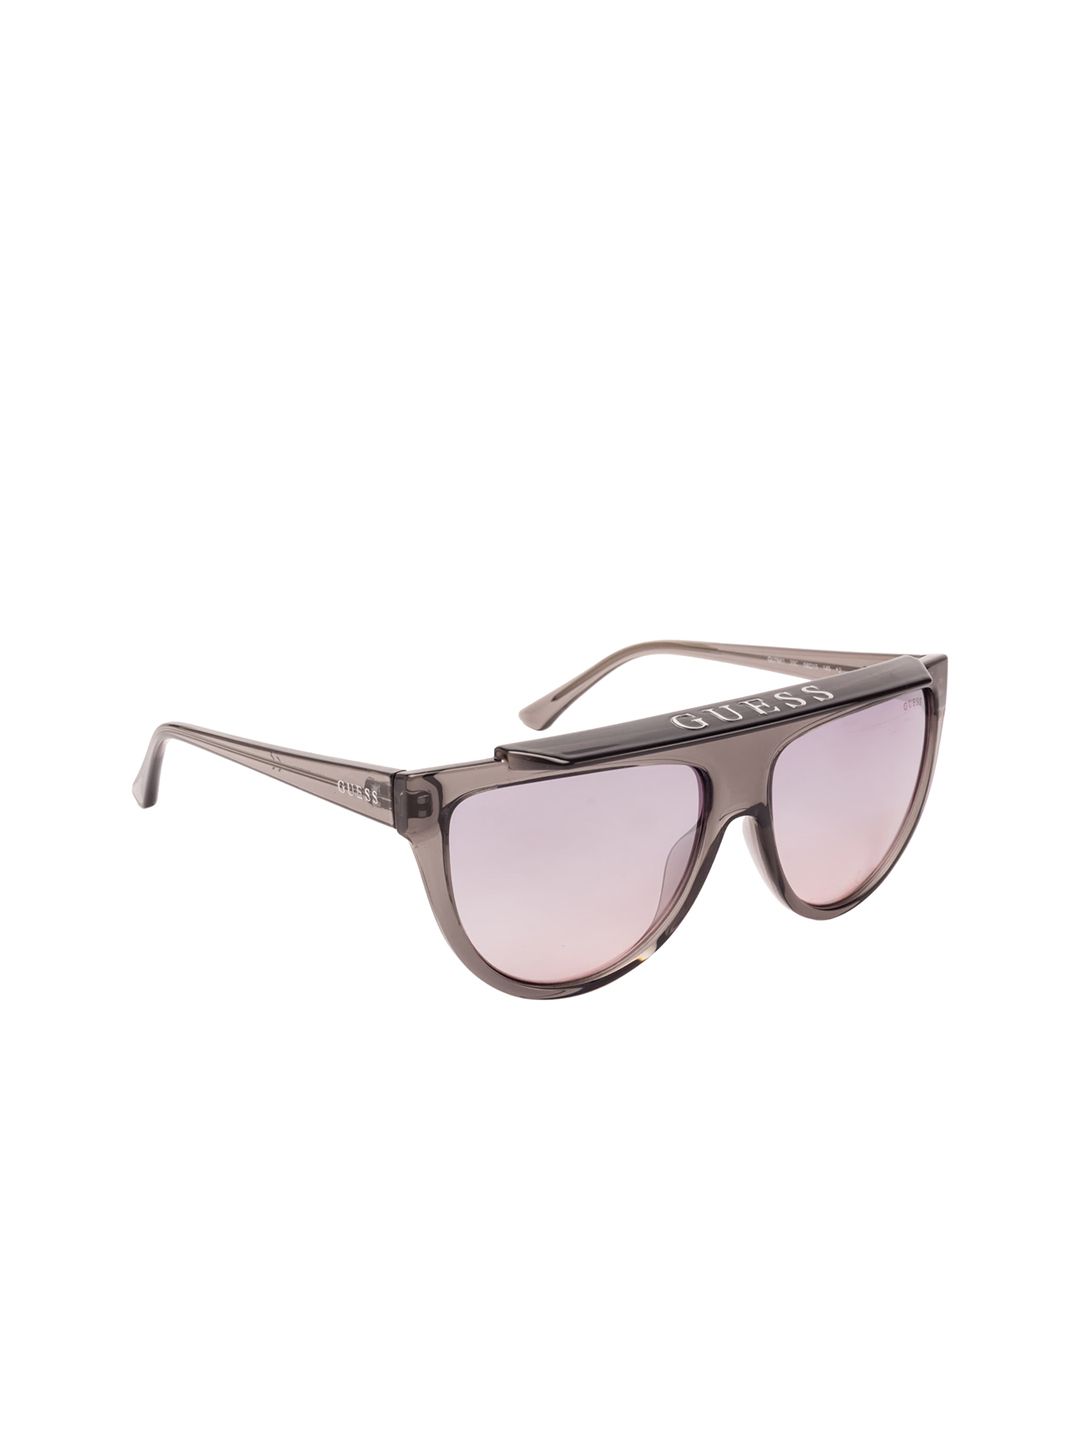 GUESS Women Cateye Sunglasses GU7663 58 20C Price in India